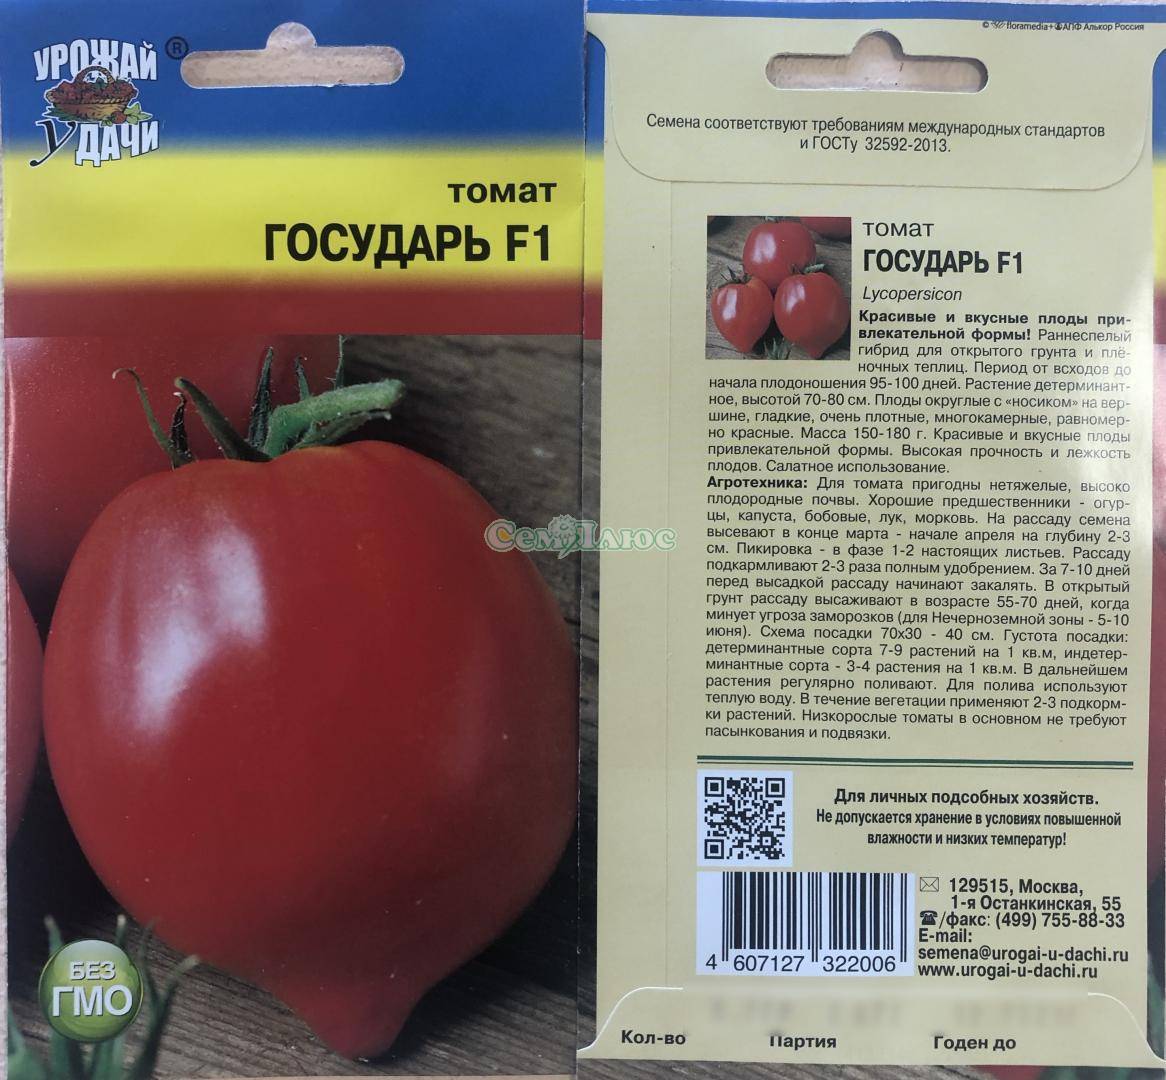 Томат "микадо красный": описание помидора с устойчивым иммунитетом и отличными вкусовыми качествами